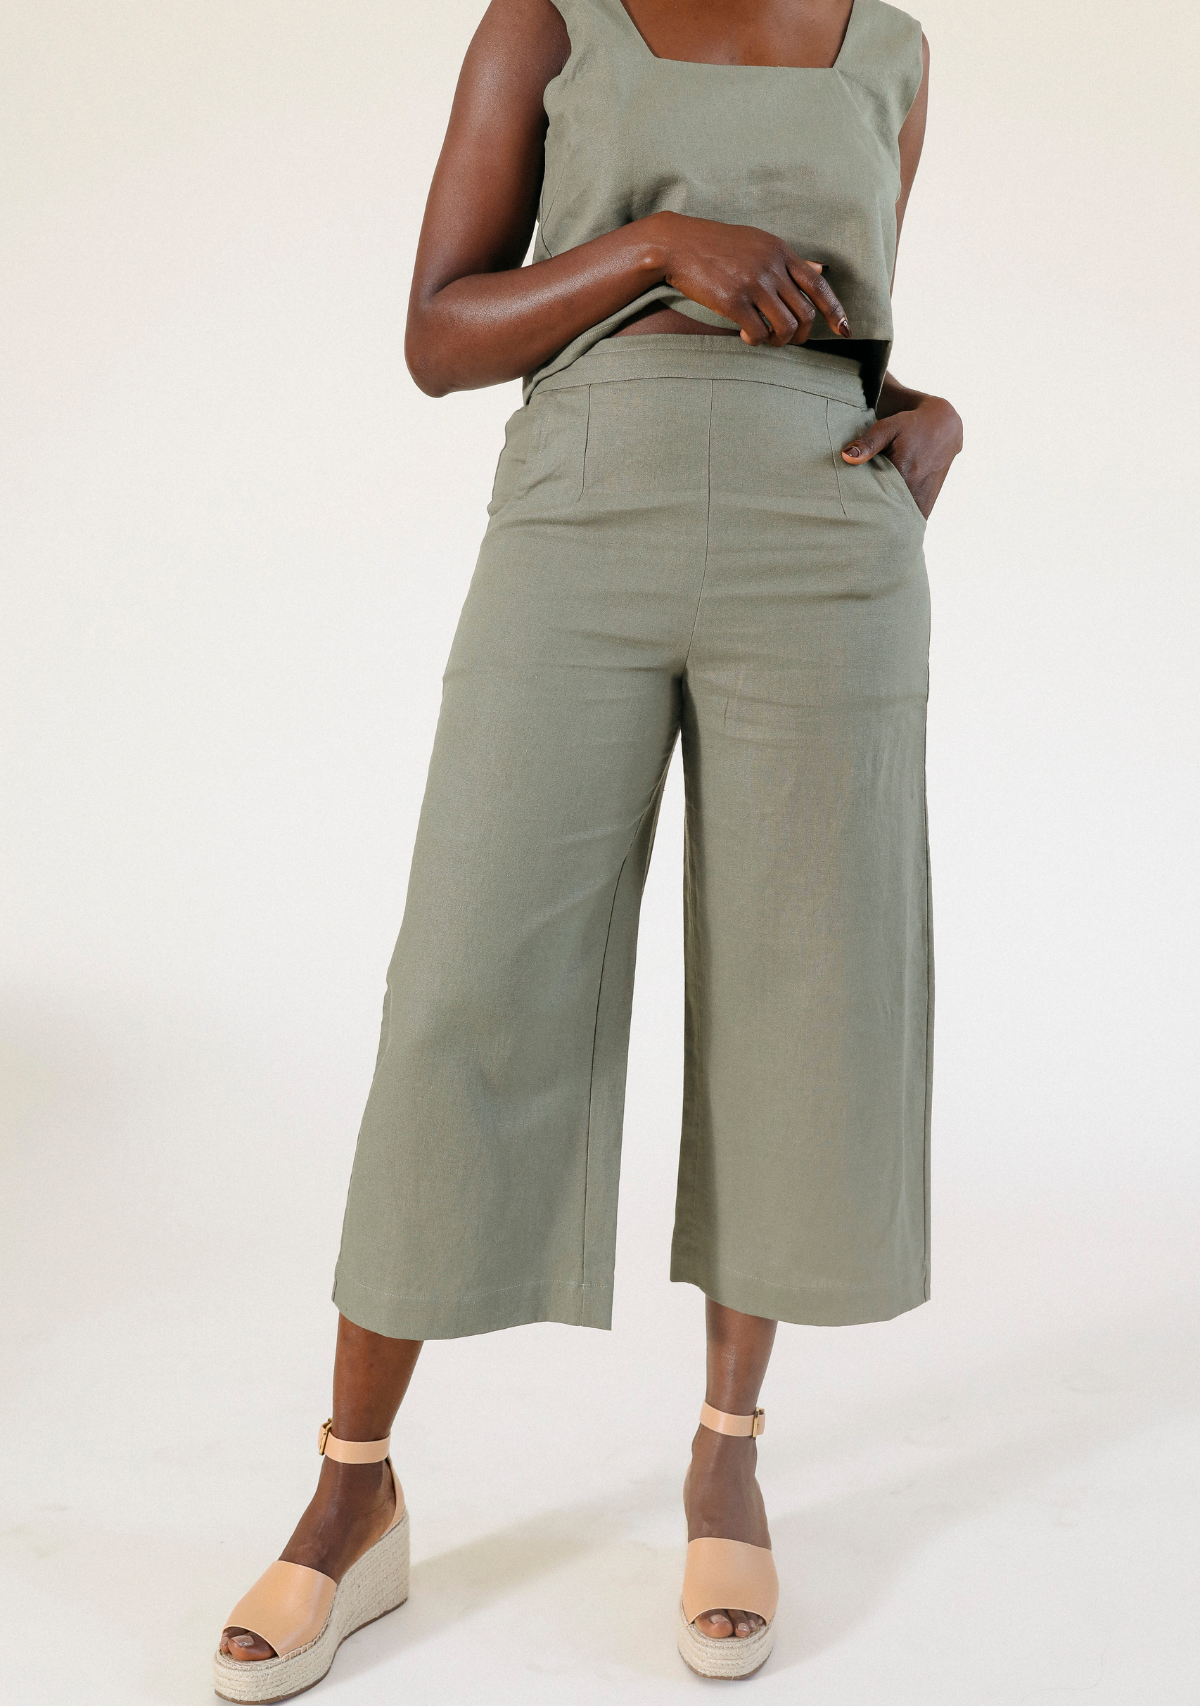 women's linen pant size XS-3X size inclusive color olive